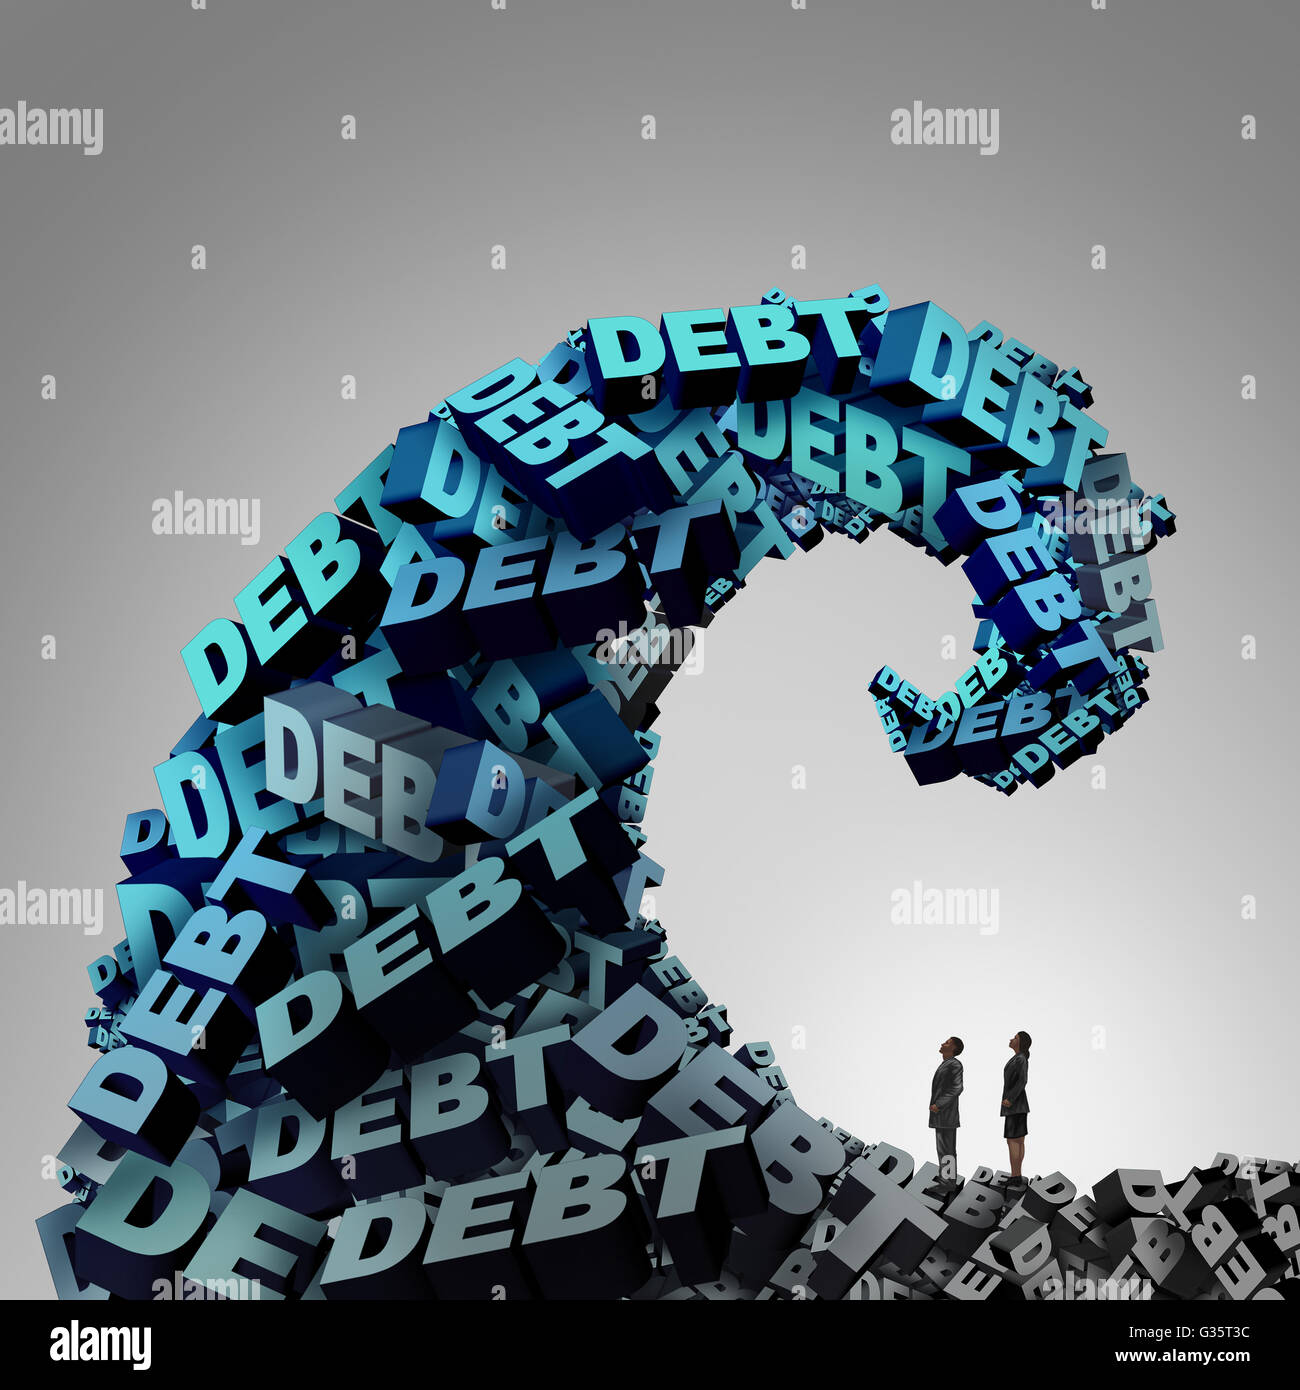 Schulden Druck Finanzkonzept wie eine riesige Welle oder Tide 3D-Illustration Text als eine Finanz- und Wirtschaftskrise Metapher für Geld Problem Risiko- und Budget Management Mühe gemacht. Stockfoto